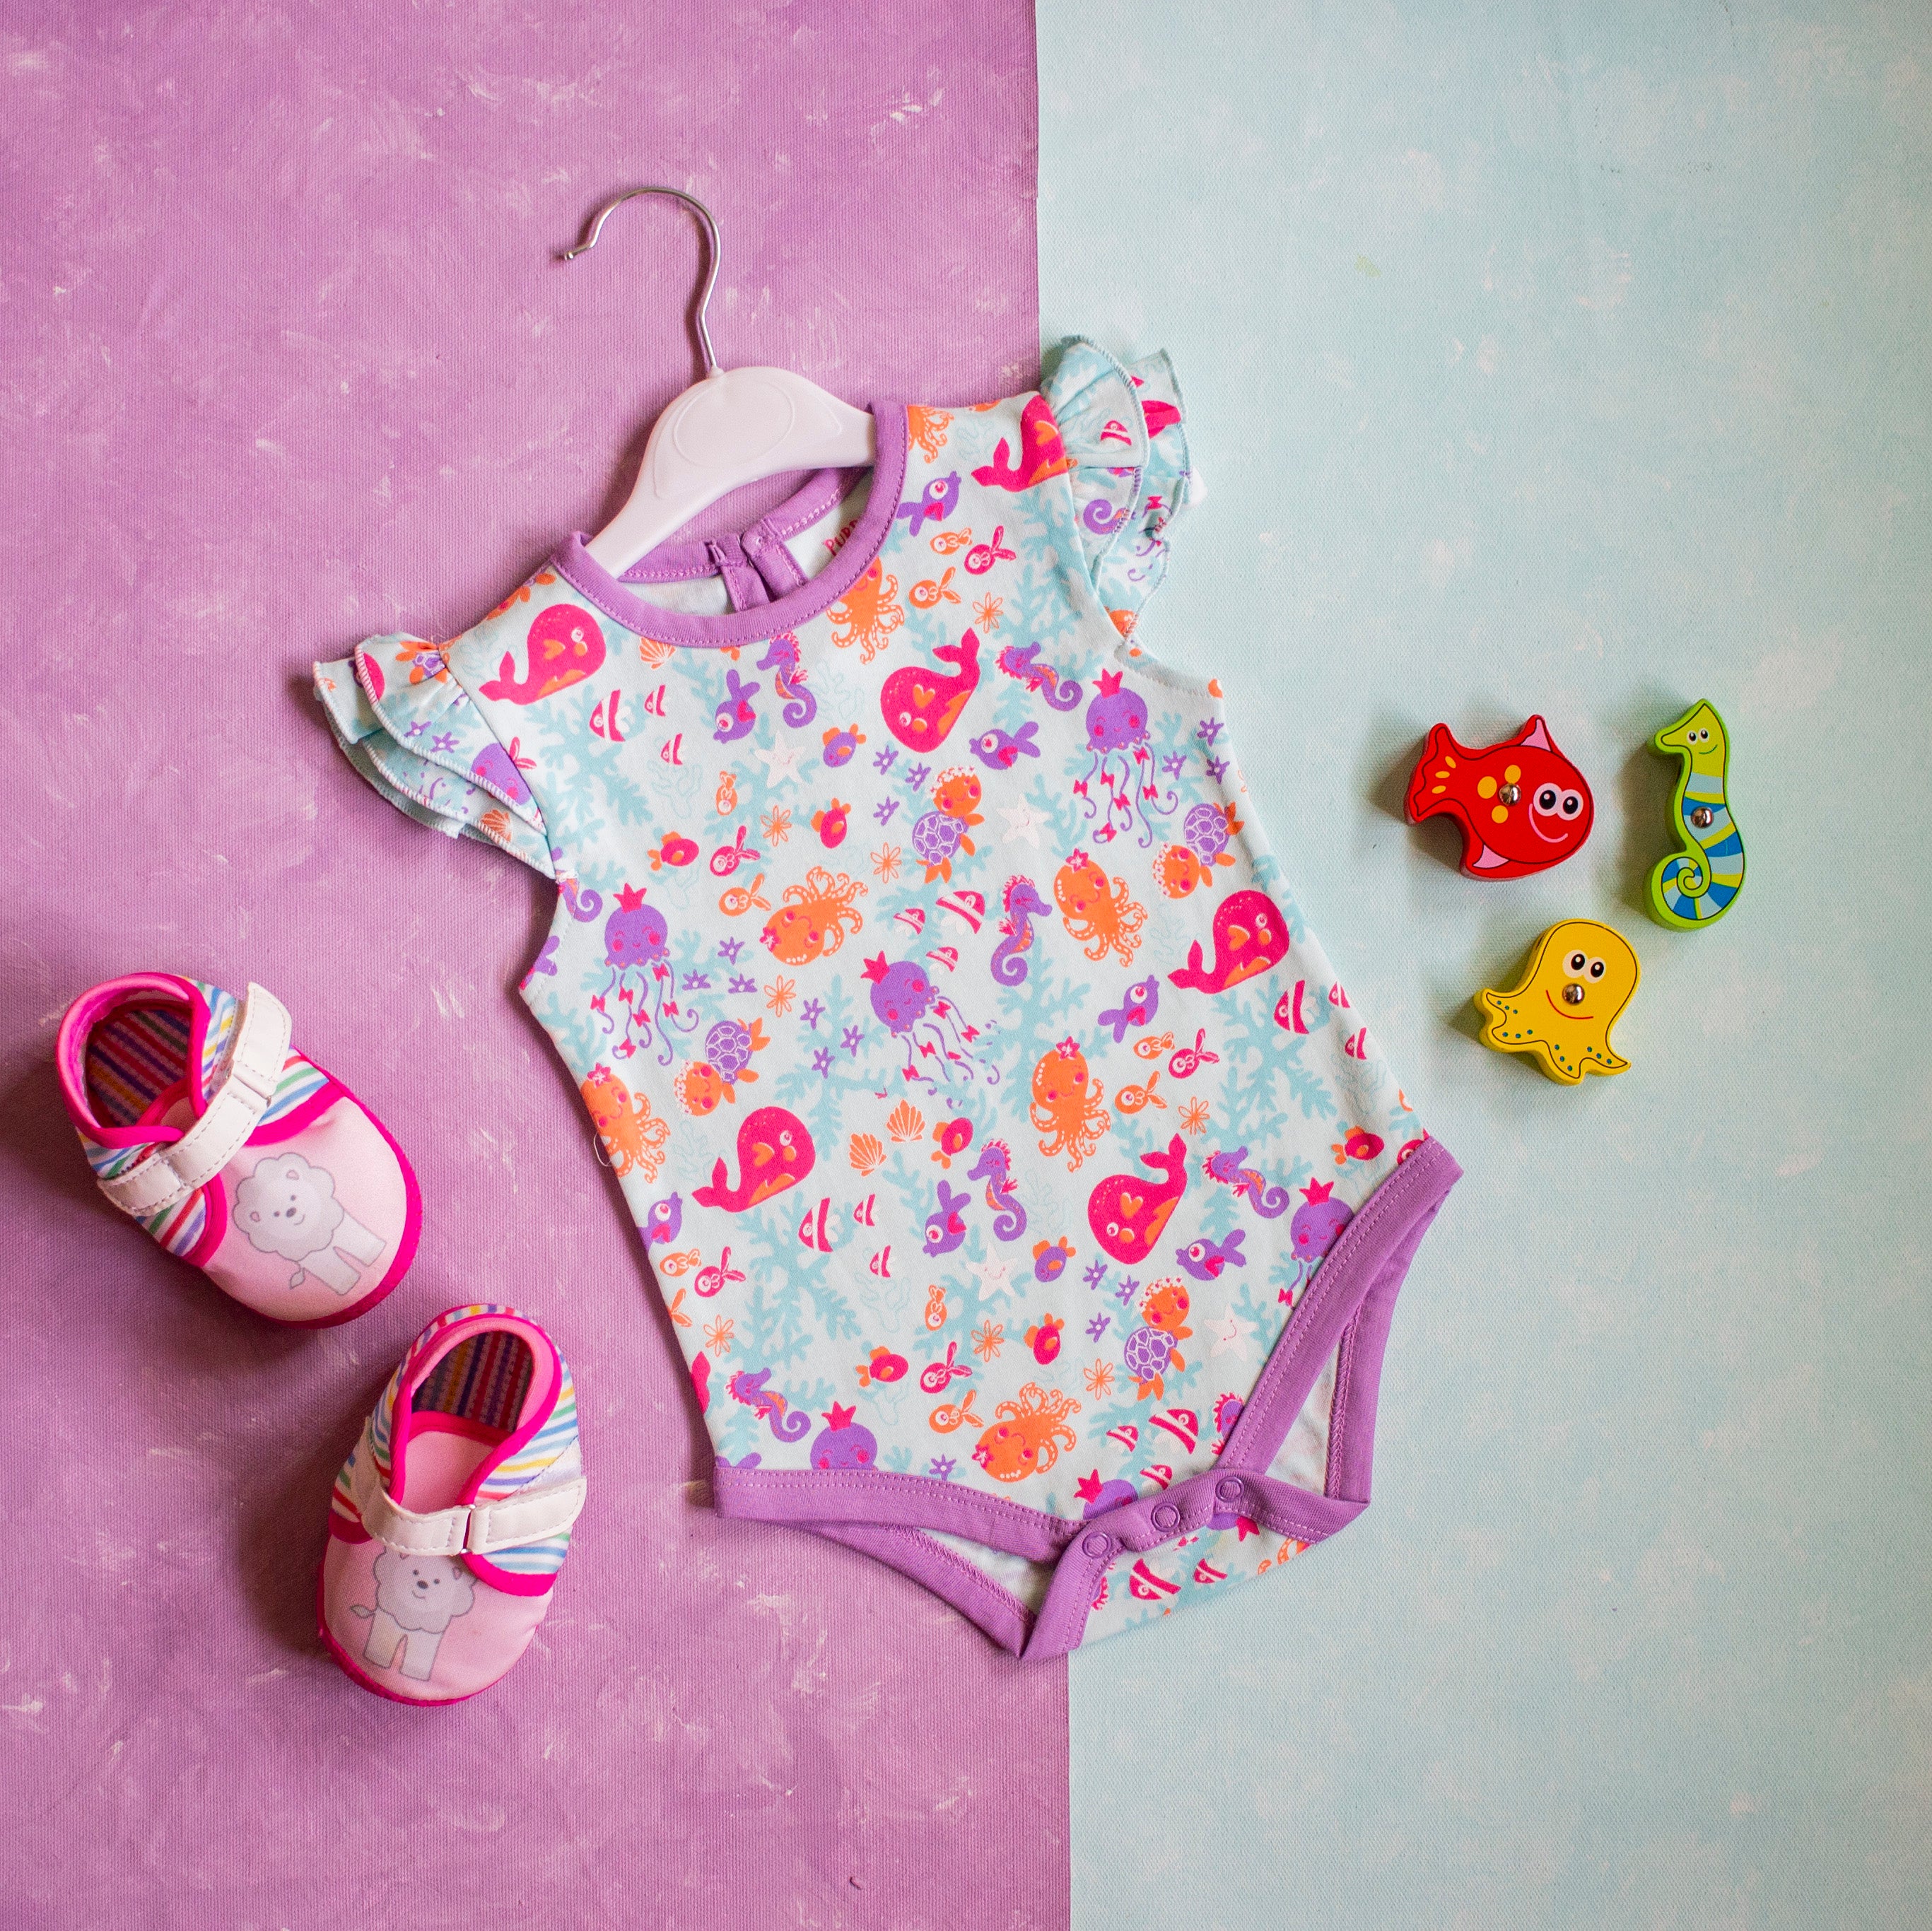 Baby Girl Onesie/Bodysuit Set | Combo Pack of 3| 100% Cotton